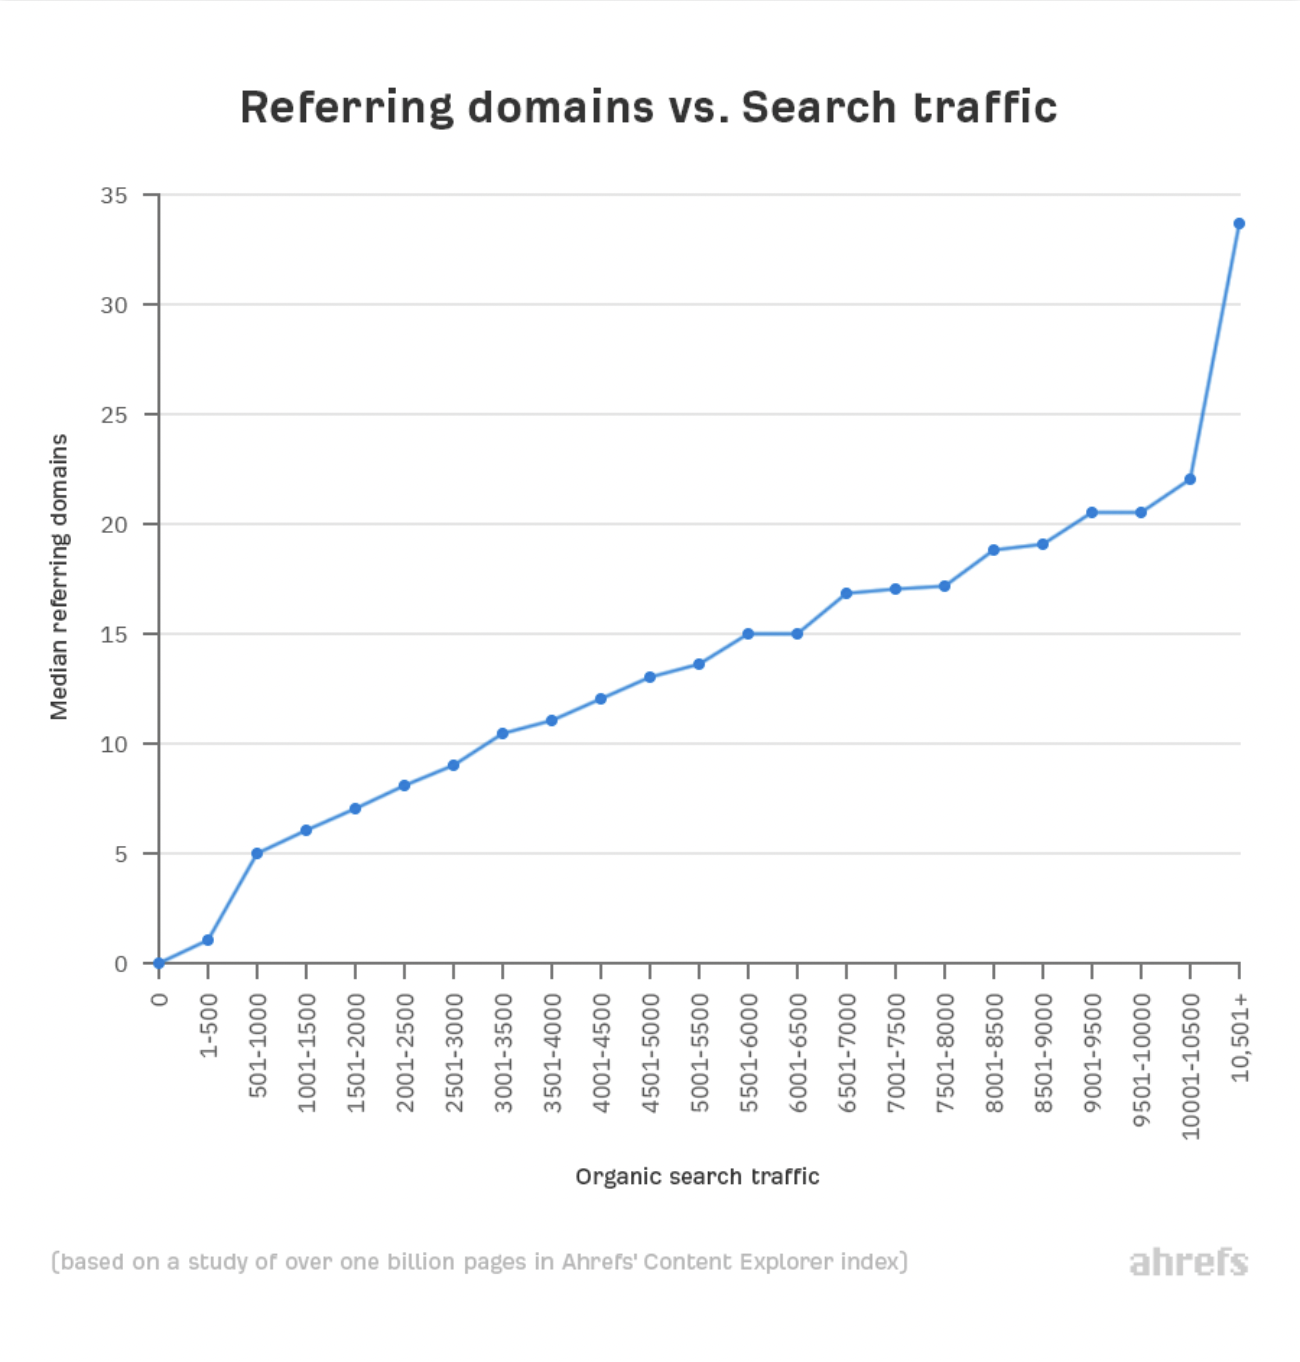 je mehr Backlinks eine Seite hat, desto mehr organischen Traffic erhält sie von Google. (Ahrefs, 2020) 